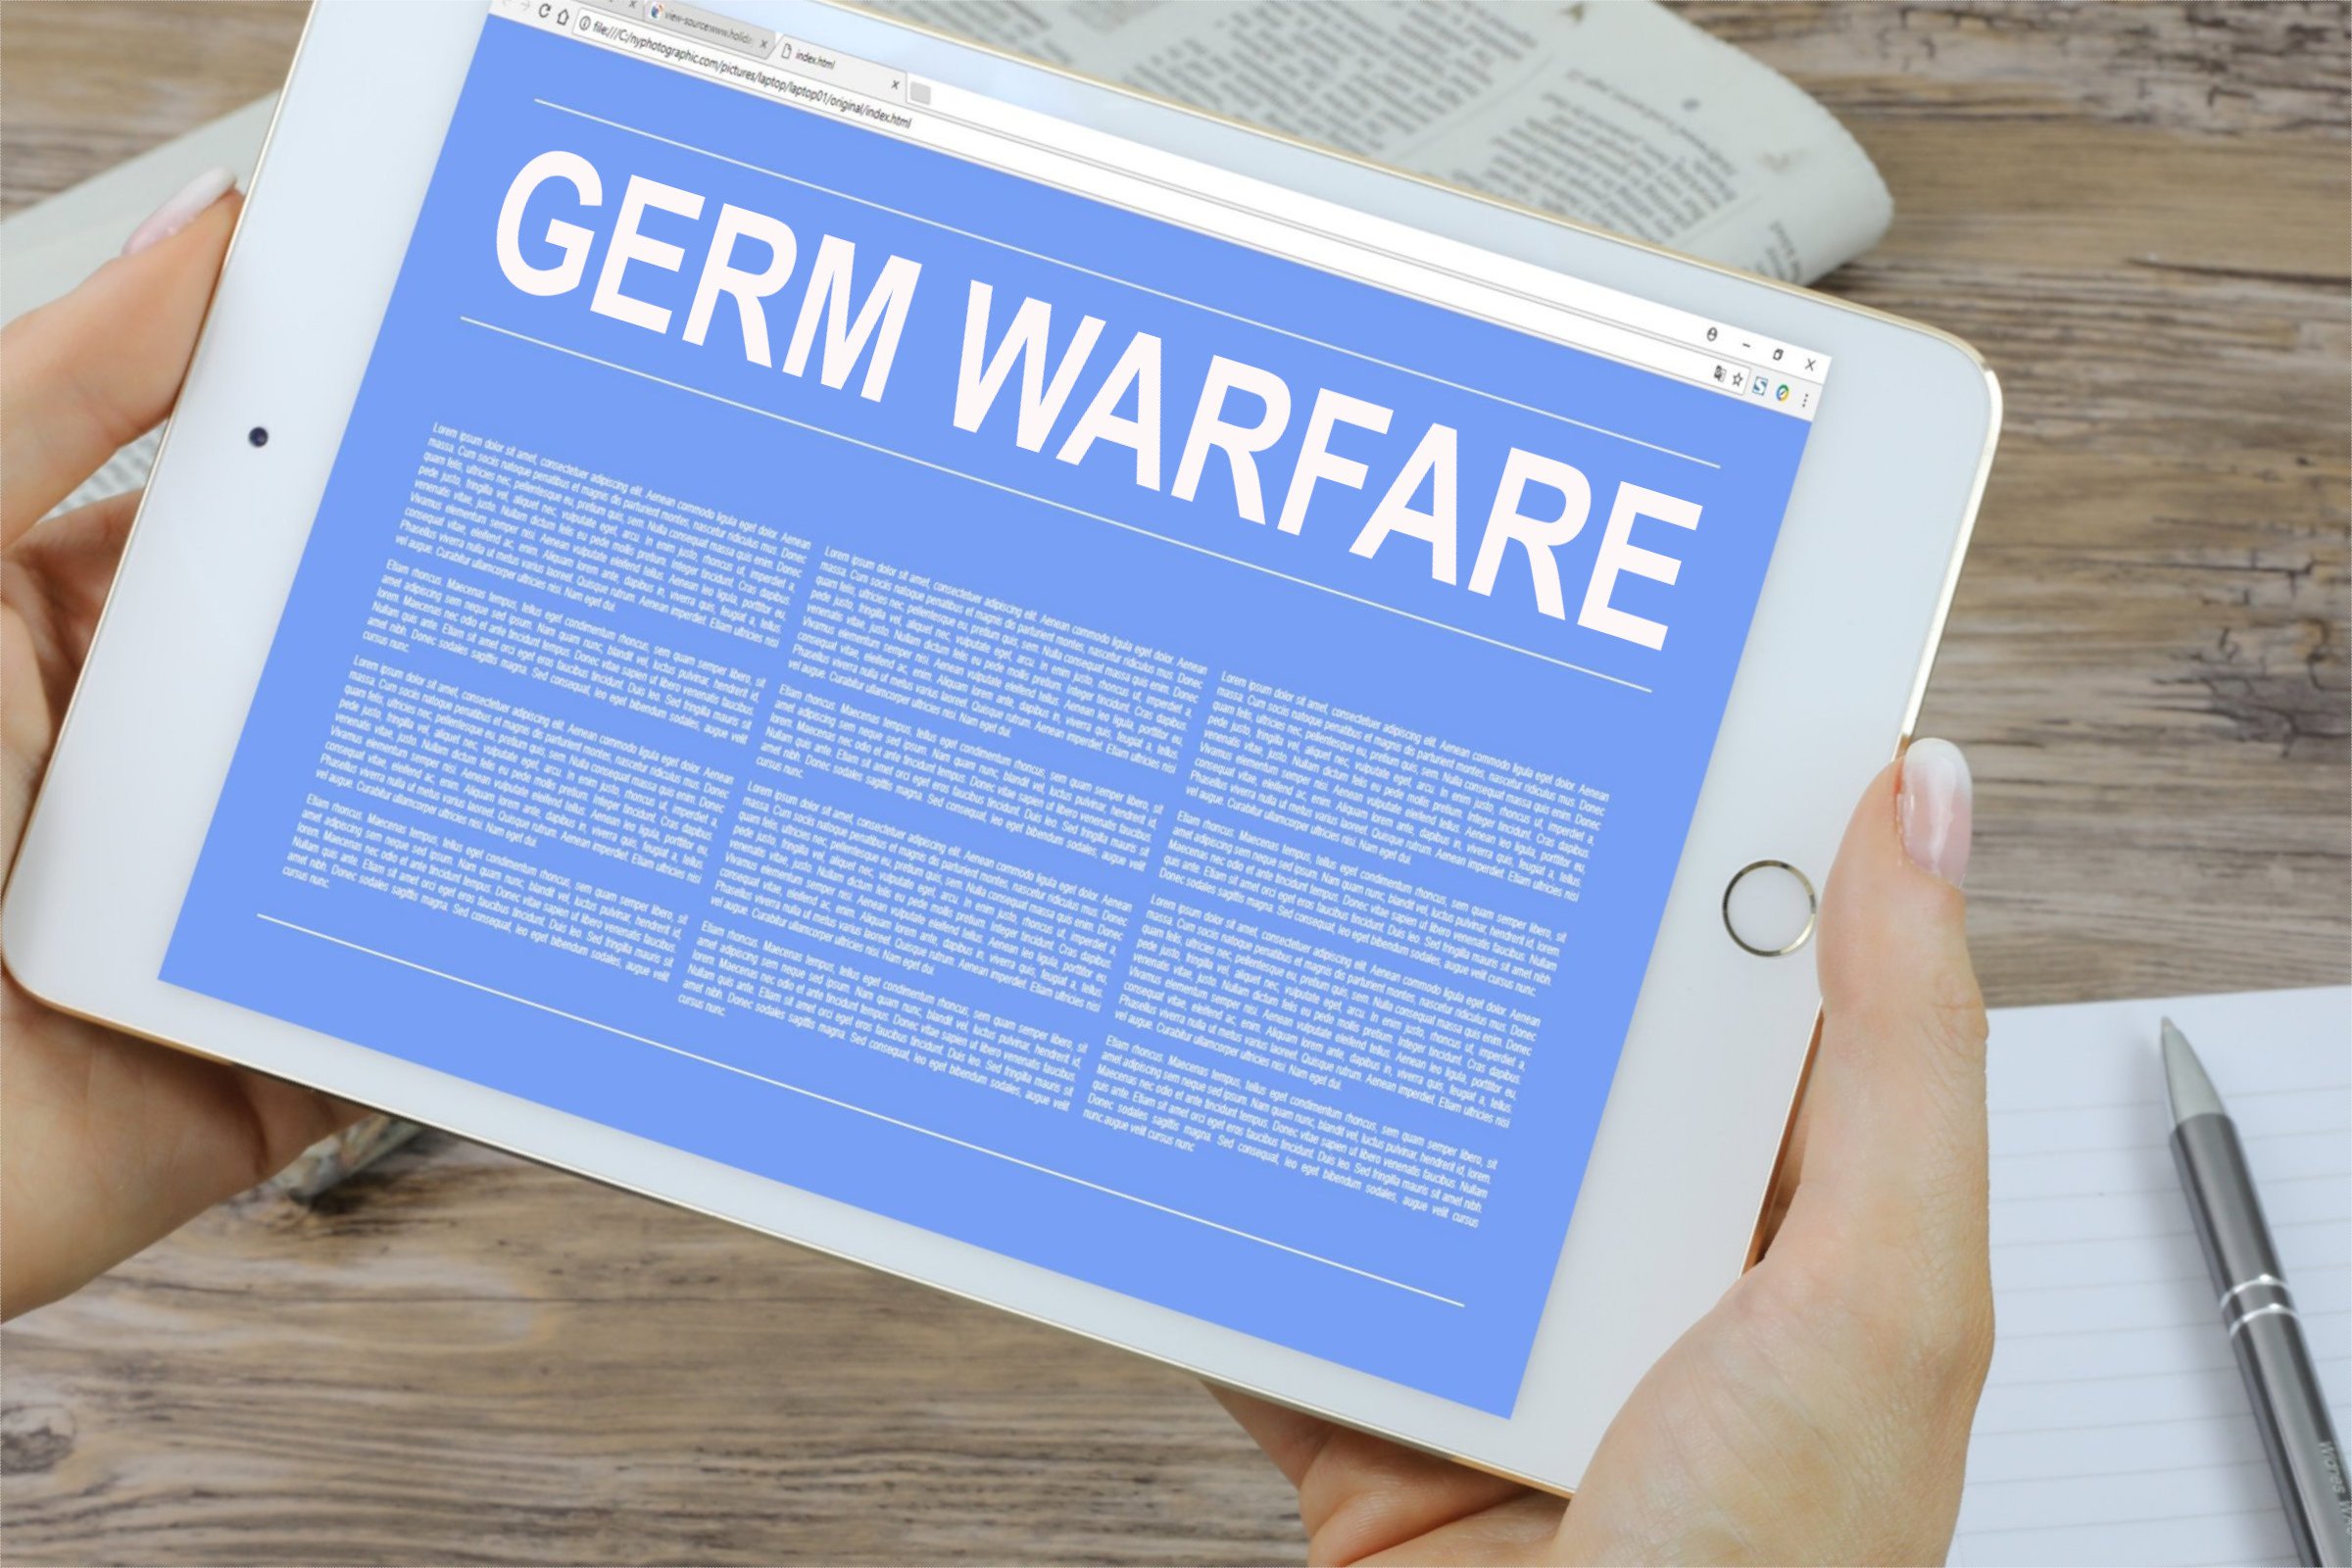 germ warfare